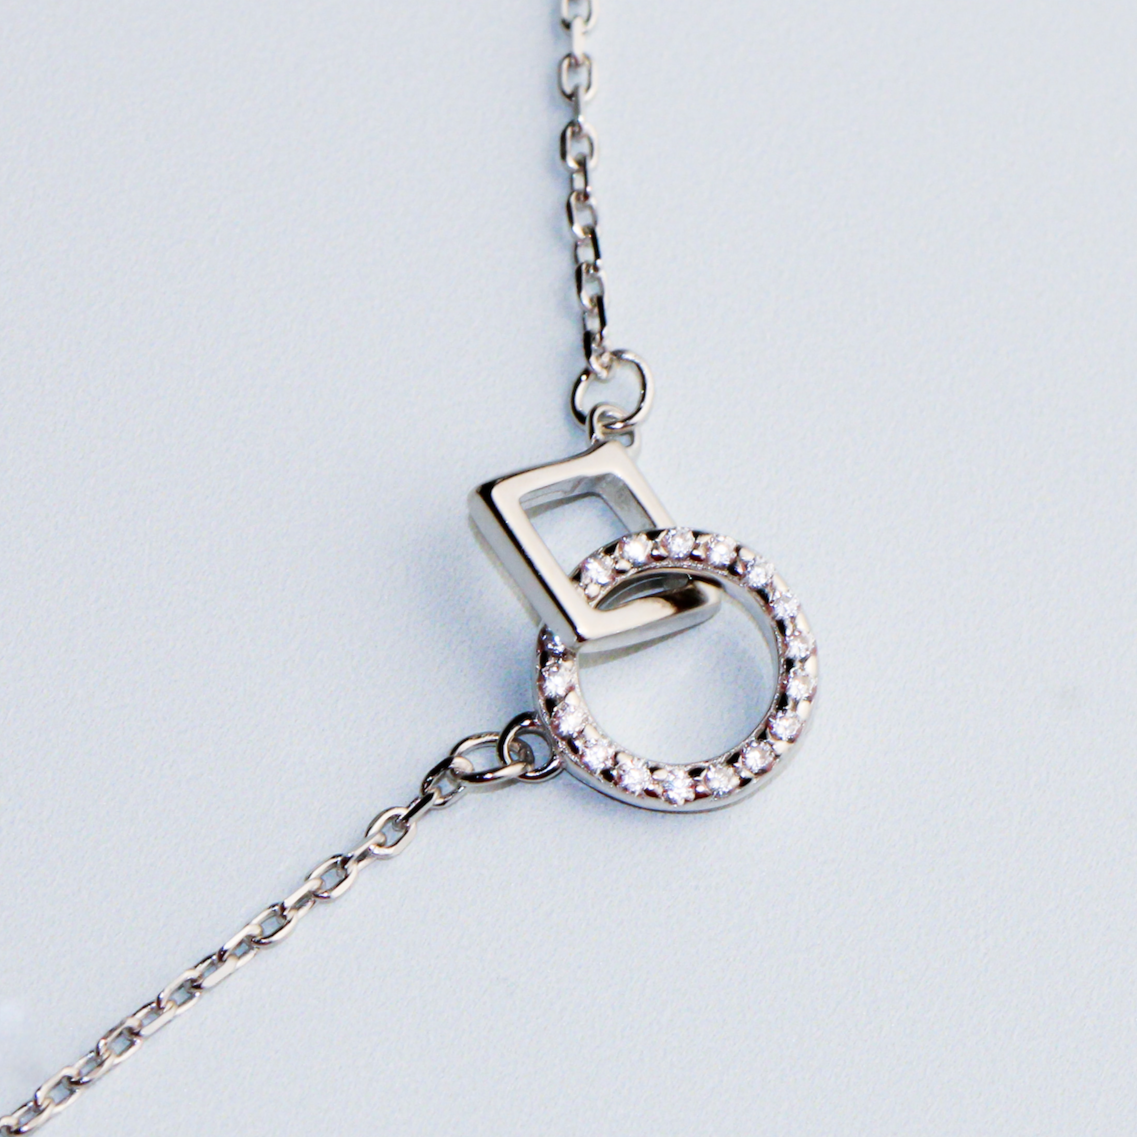 Interlocking Shapes Pendant Necklace